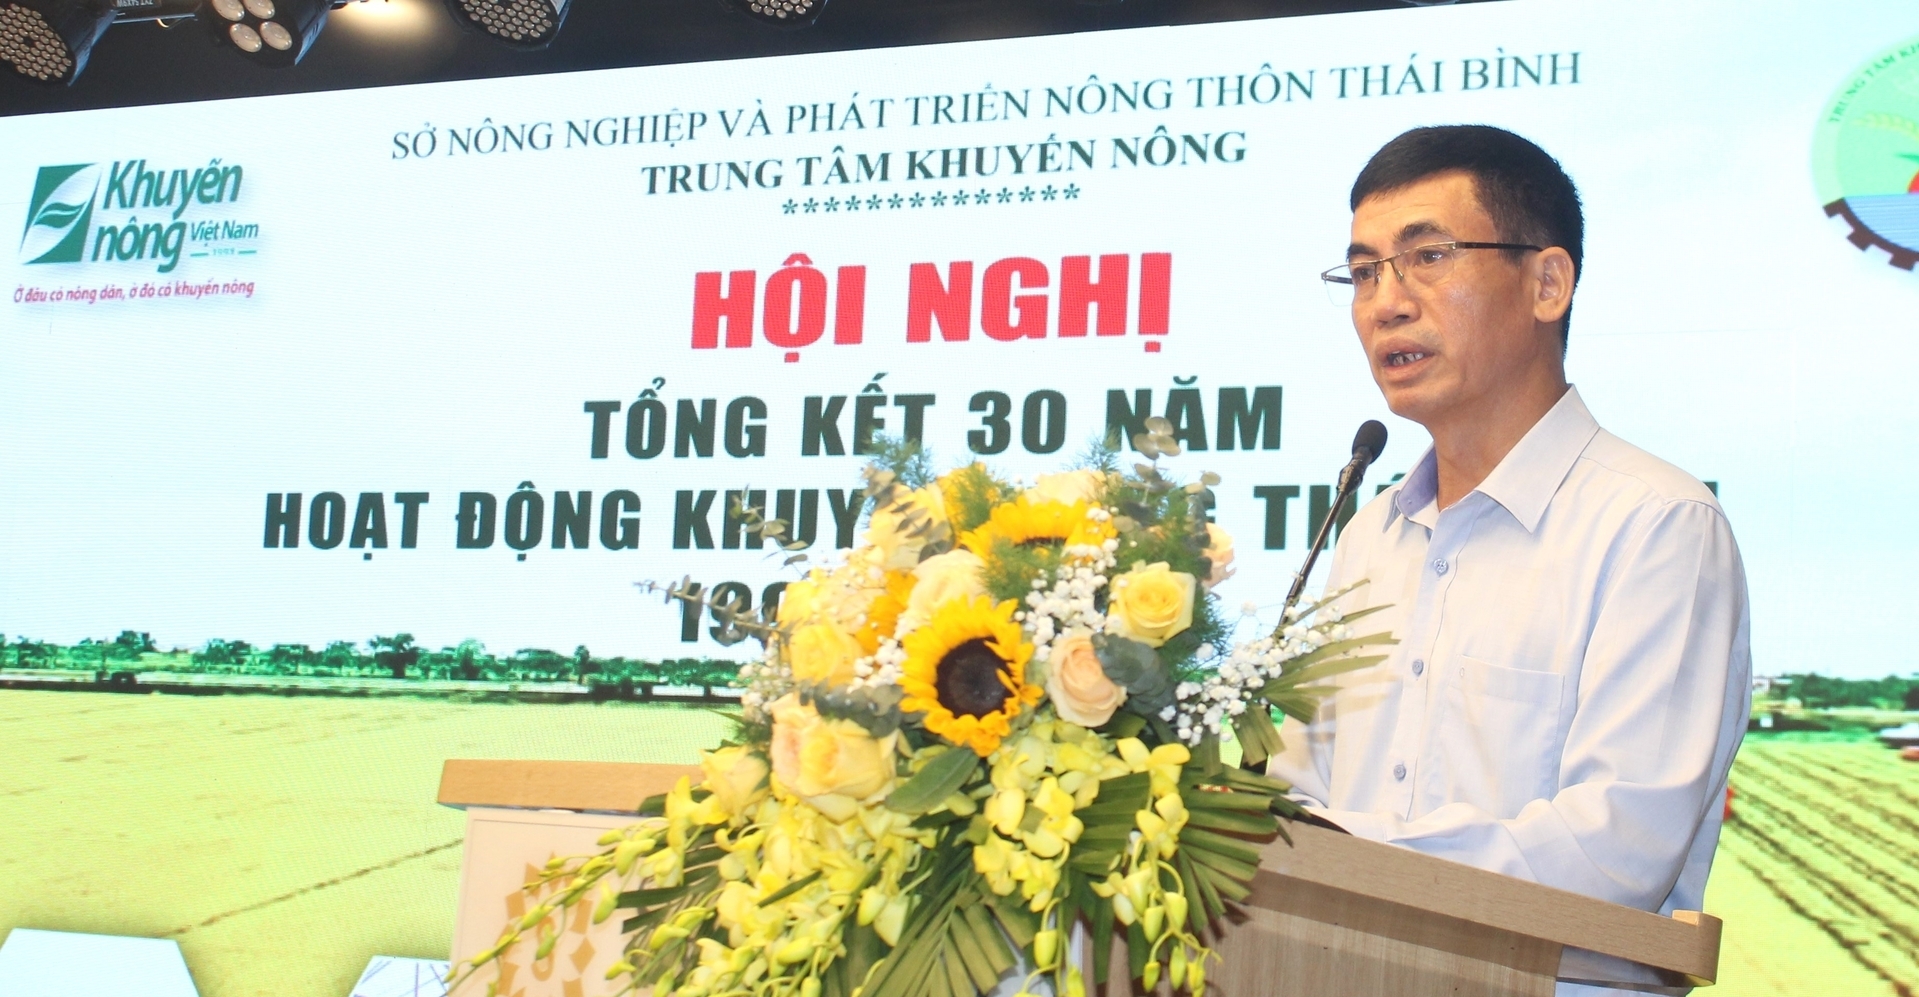 Ông Hoàng Văn Hồng, Phó Giám đốc Trung tâm Khuyến nông Quốc gia phát biểu tại hội nghị. Ảnh: Trung Quân.